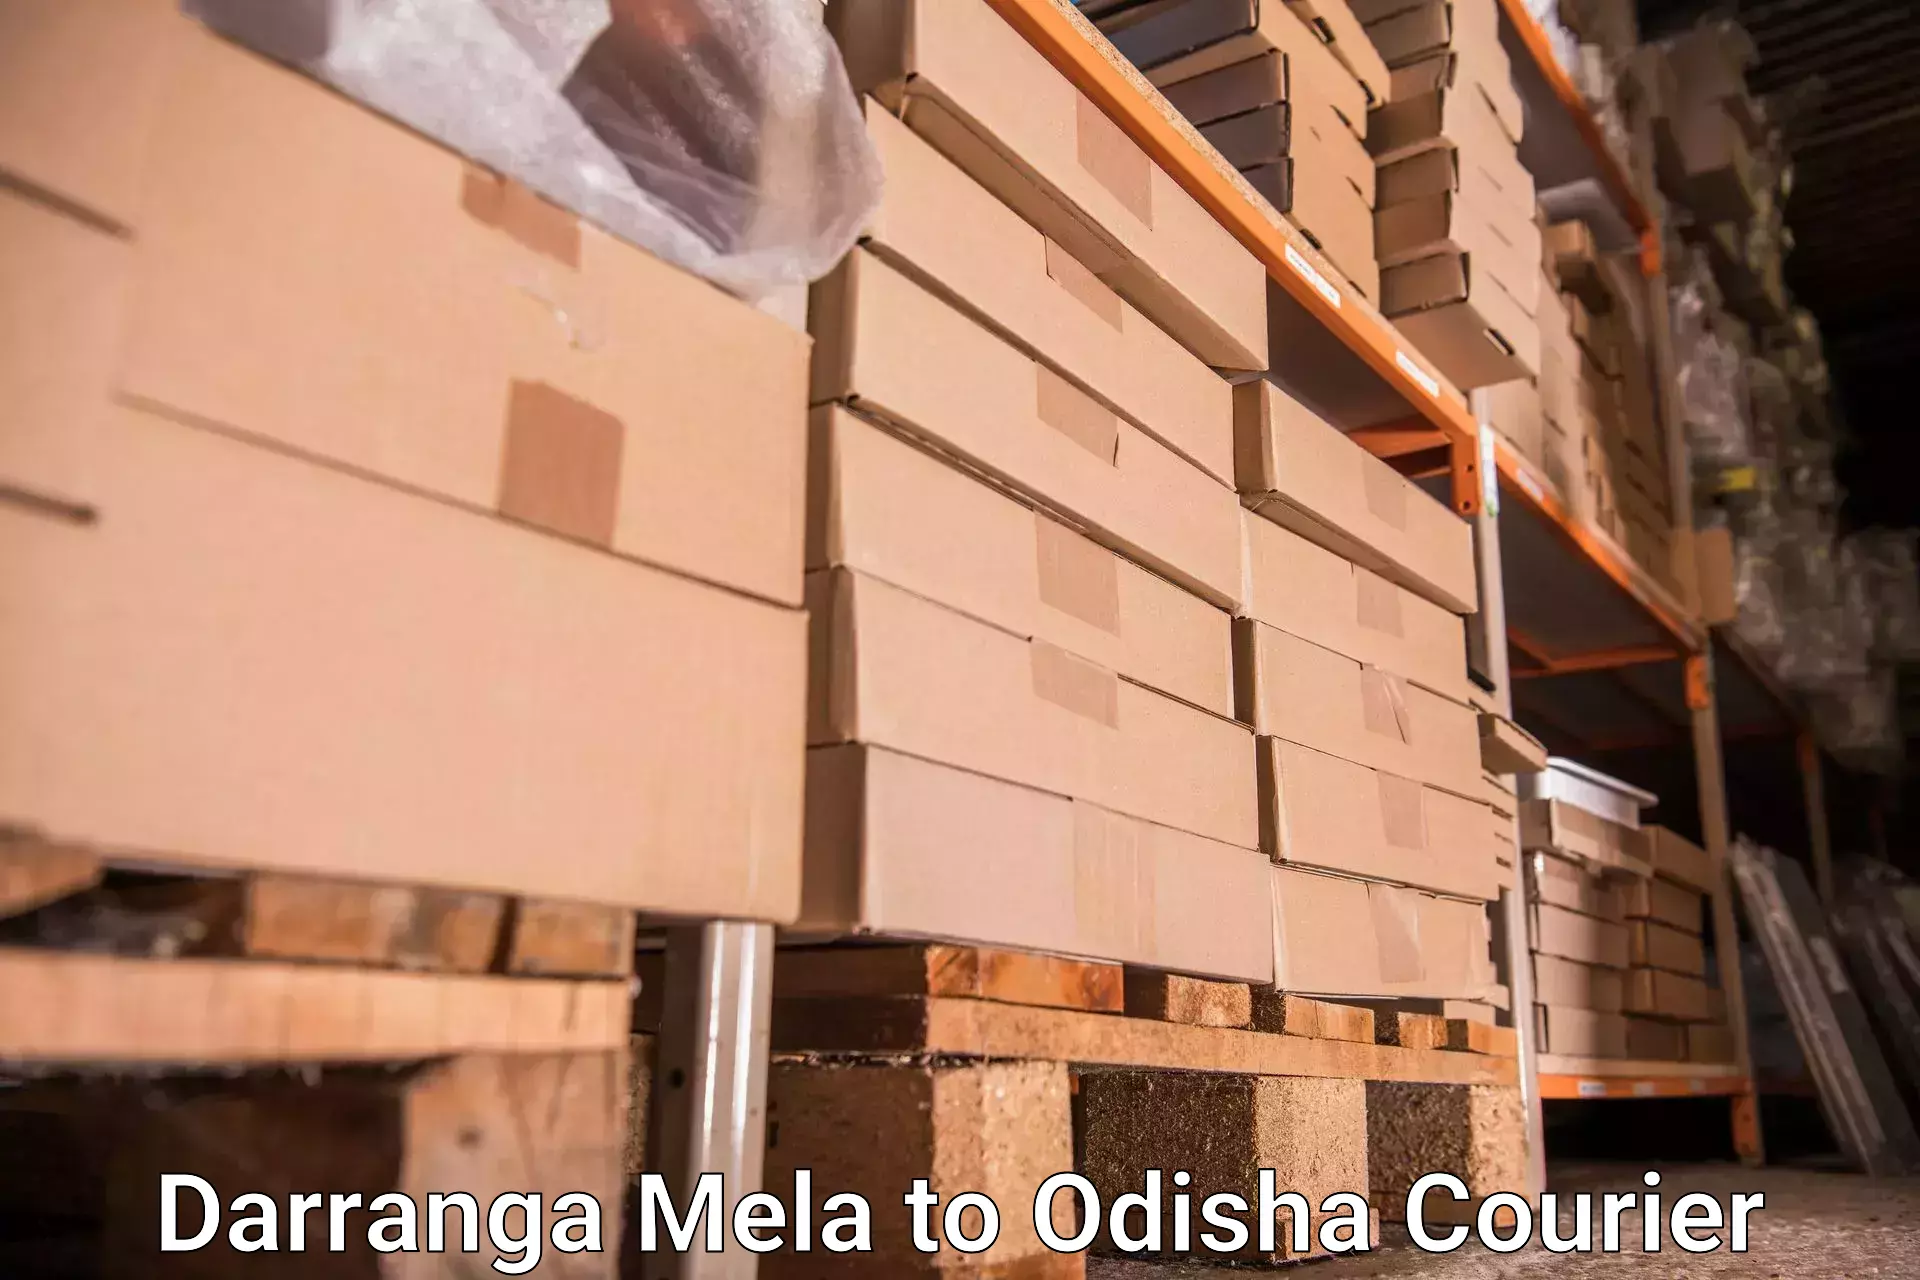 Luggage shipment processing Darranga Mela to Bamra